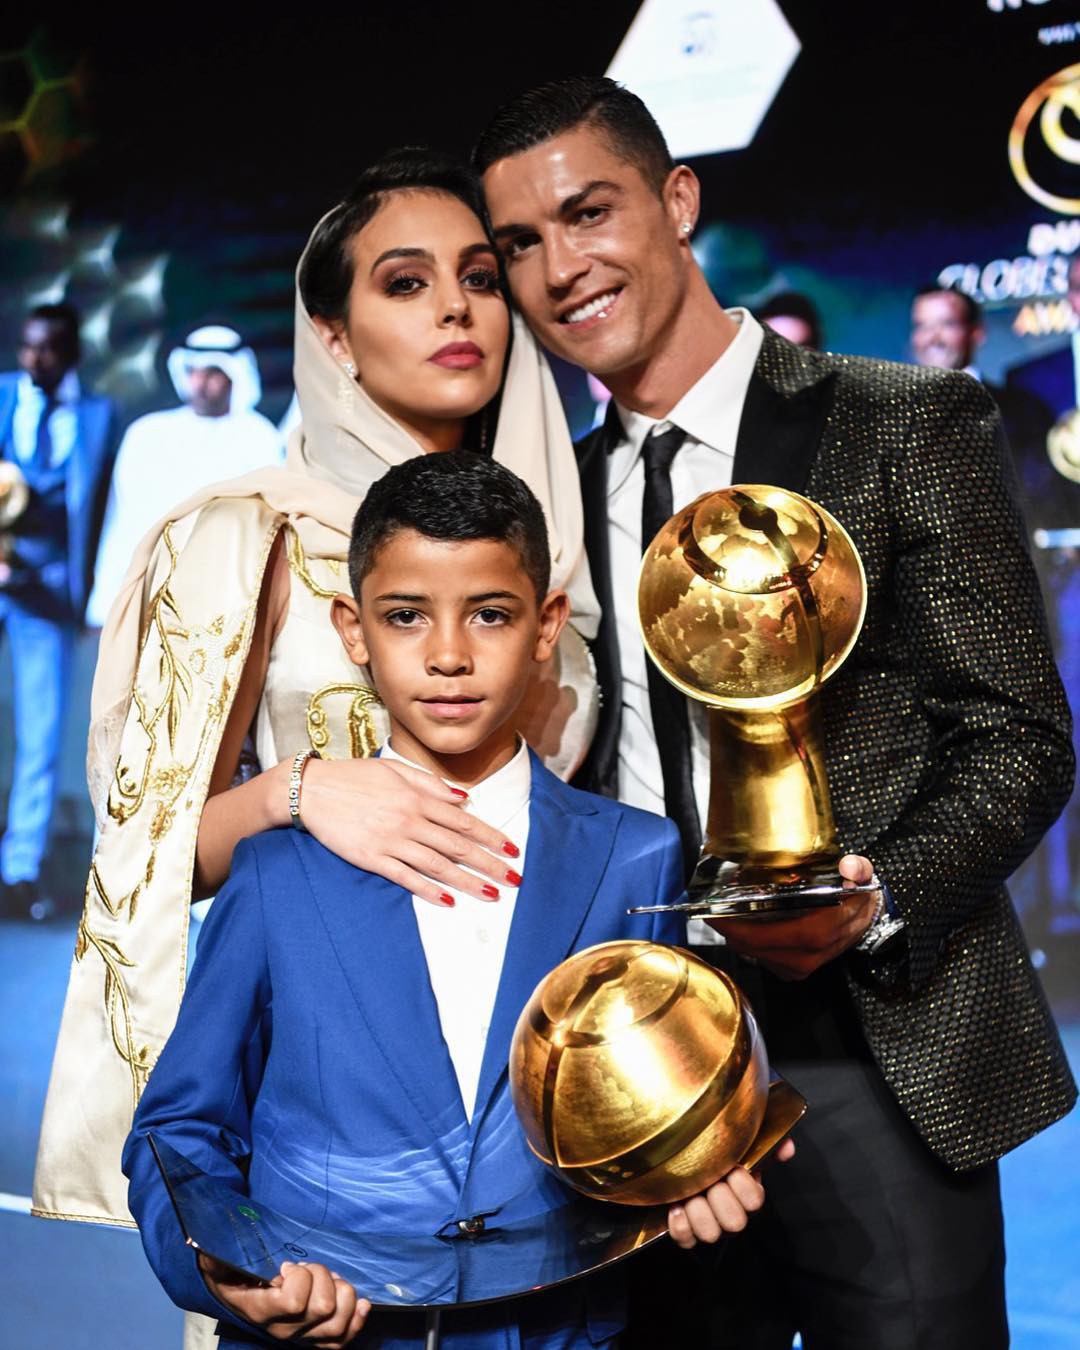 Tuyển tập những khoảnh khắc khiến fan rụng tim của bạn gái Ronaldo: Lần nào cũng đẹp xuất thần nhưng xúc động nhất là hình ảnh cuối - Ảnh 8.